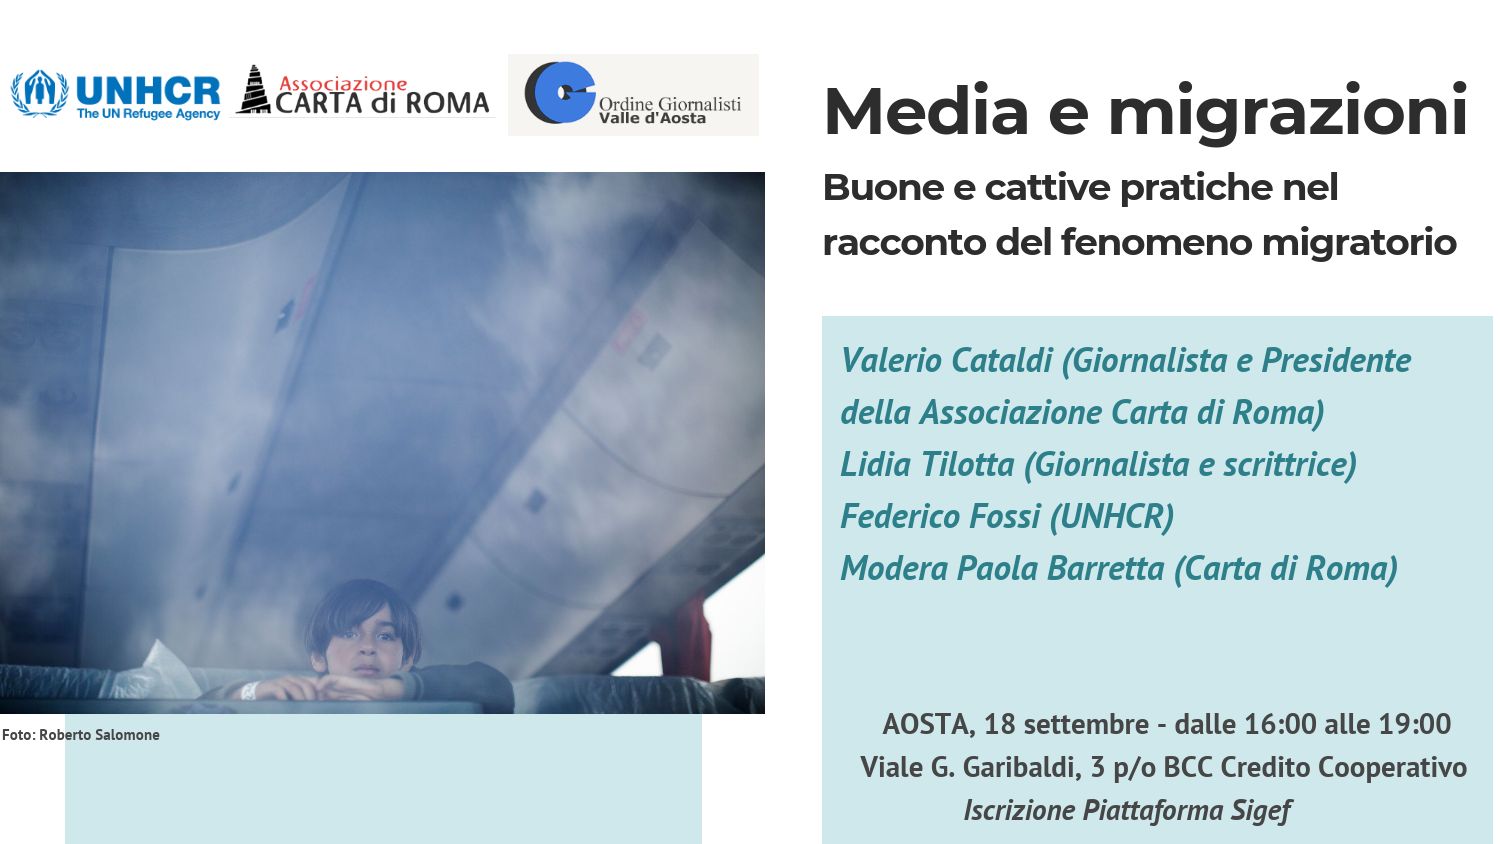 Il 18 settembre ad Aosta per un incontro su Media e Migrazioni